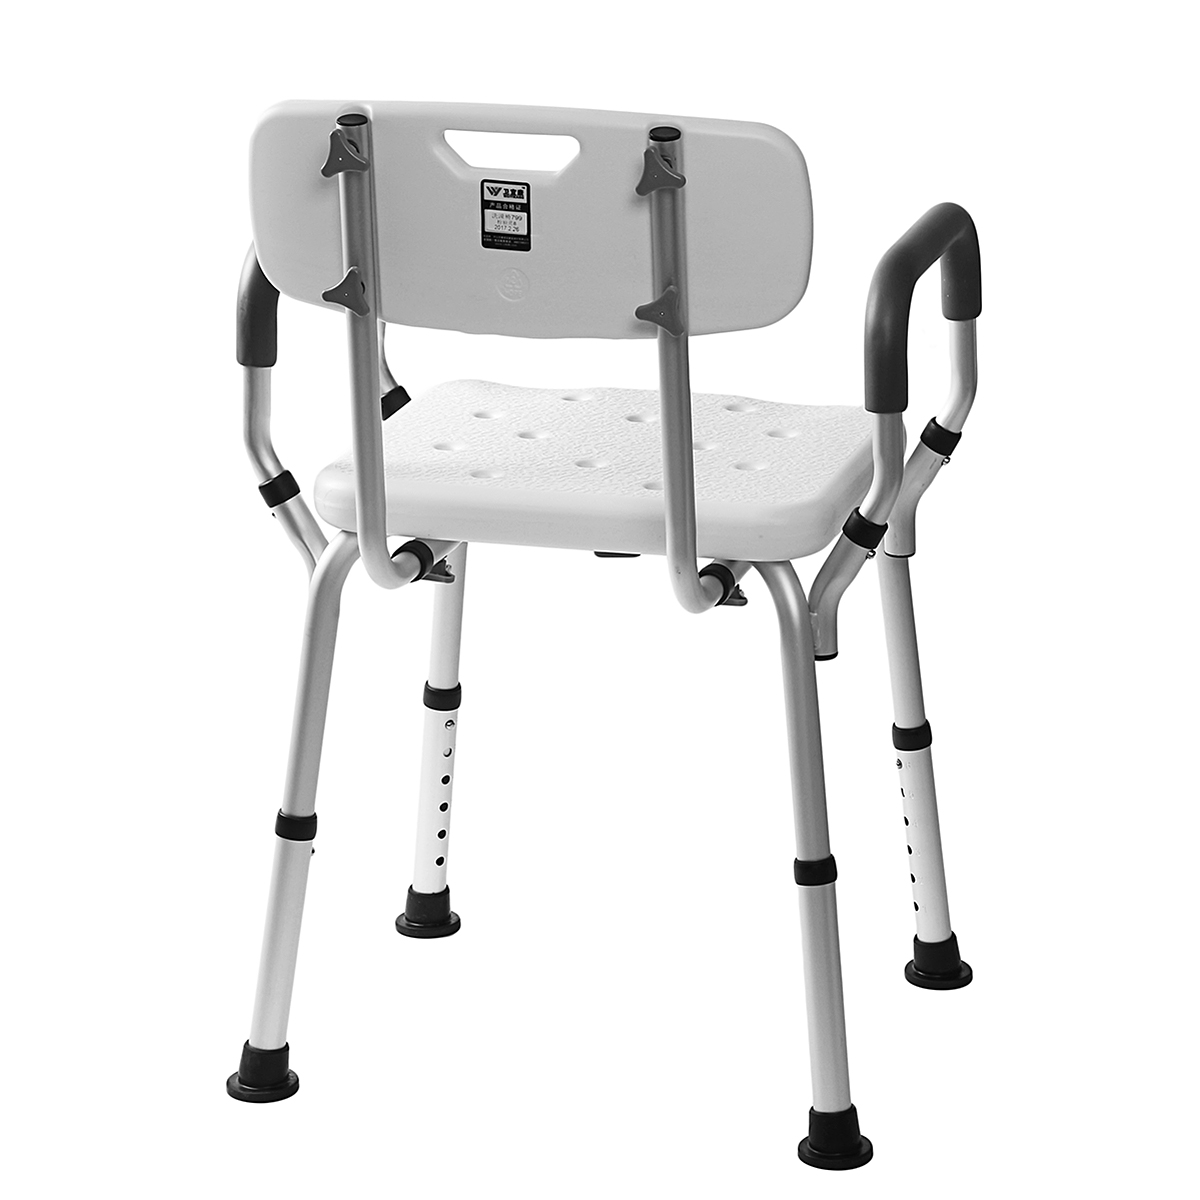 Adjustable Medical Shower Folding Chair Bathtub Bench Bath Seat